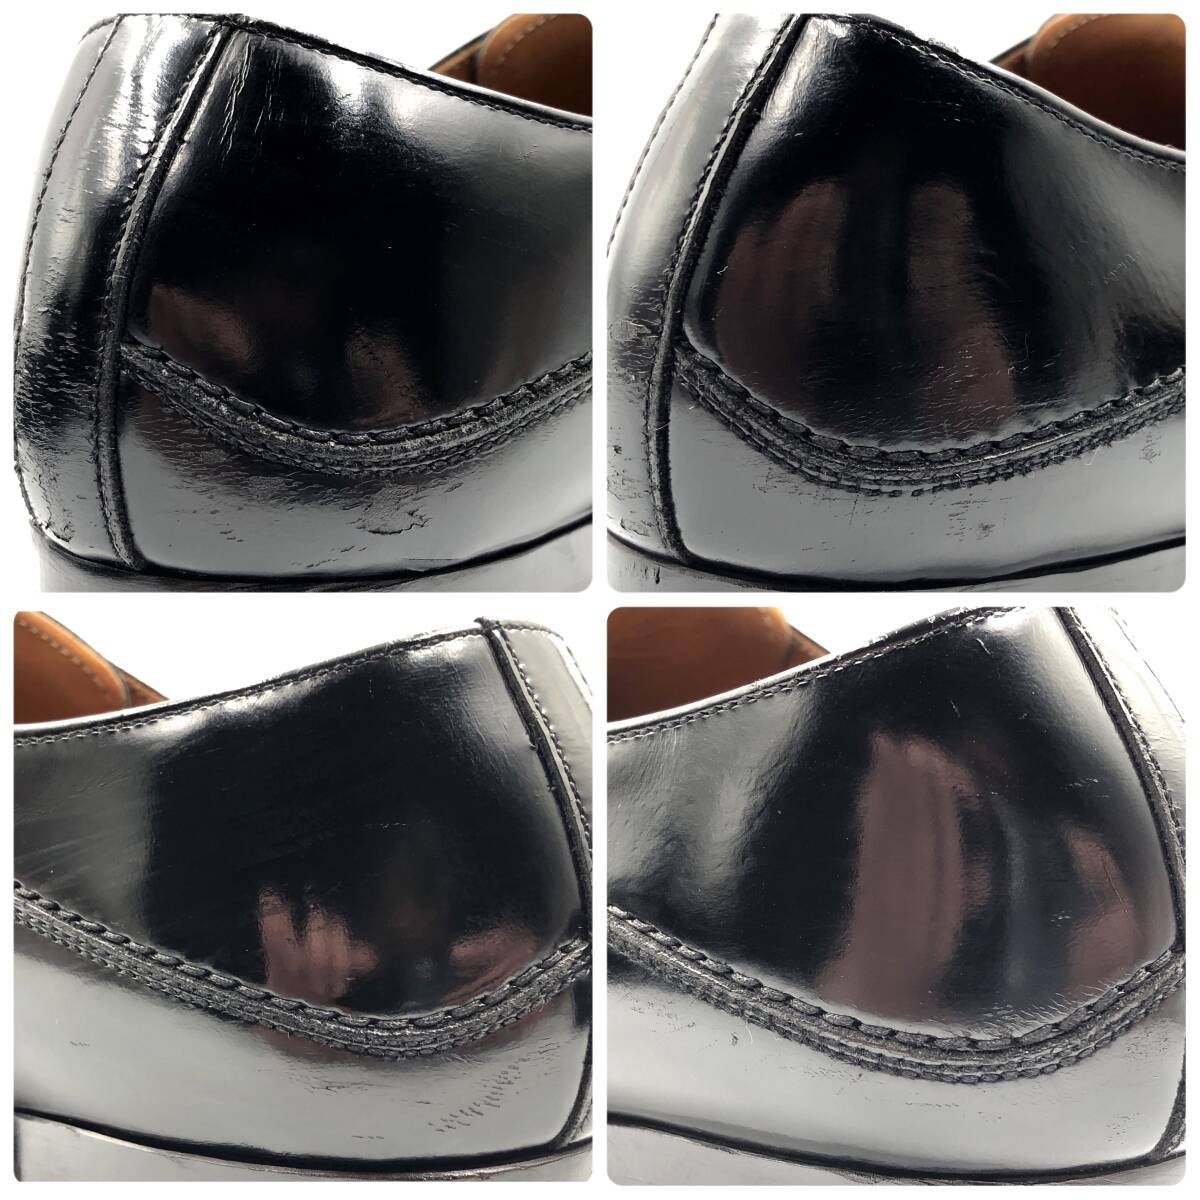 即決 REGAL リーガル 27cm 913R メンズ レザーシューズ モンクストラップ 黒 ブラック 革靴 皮靴 ビジネスシューズ